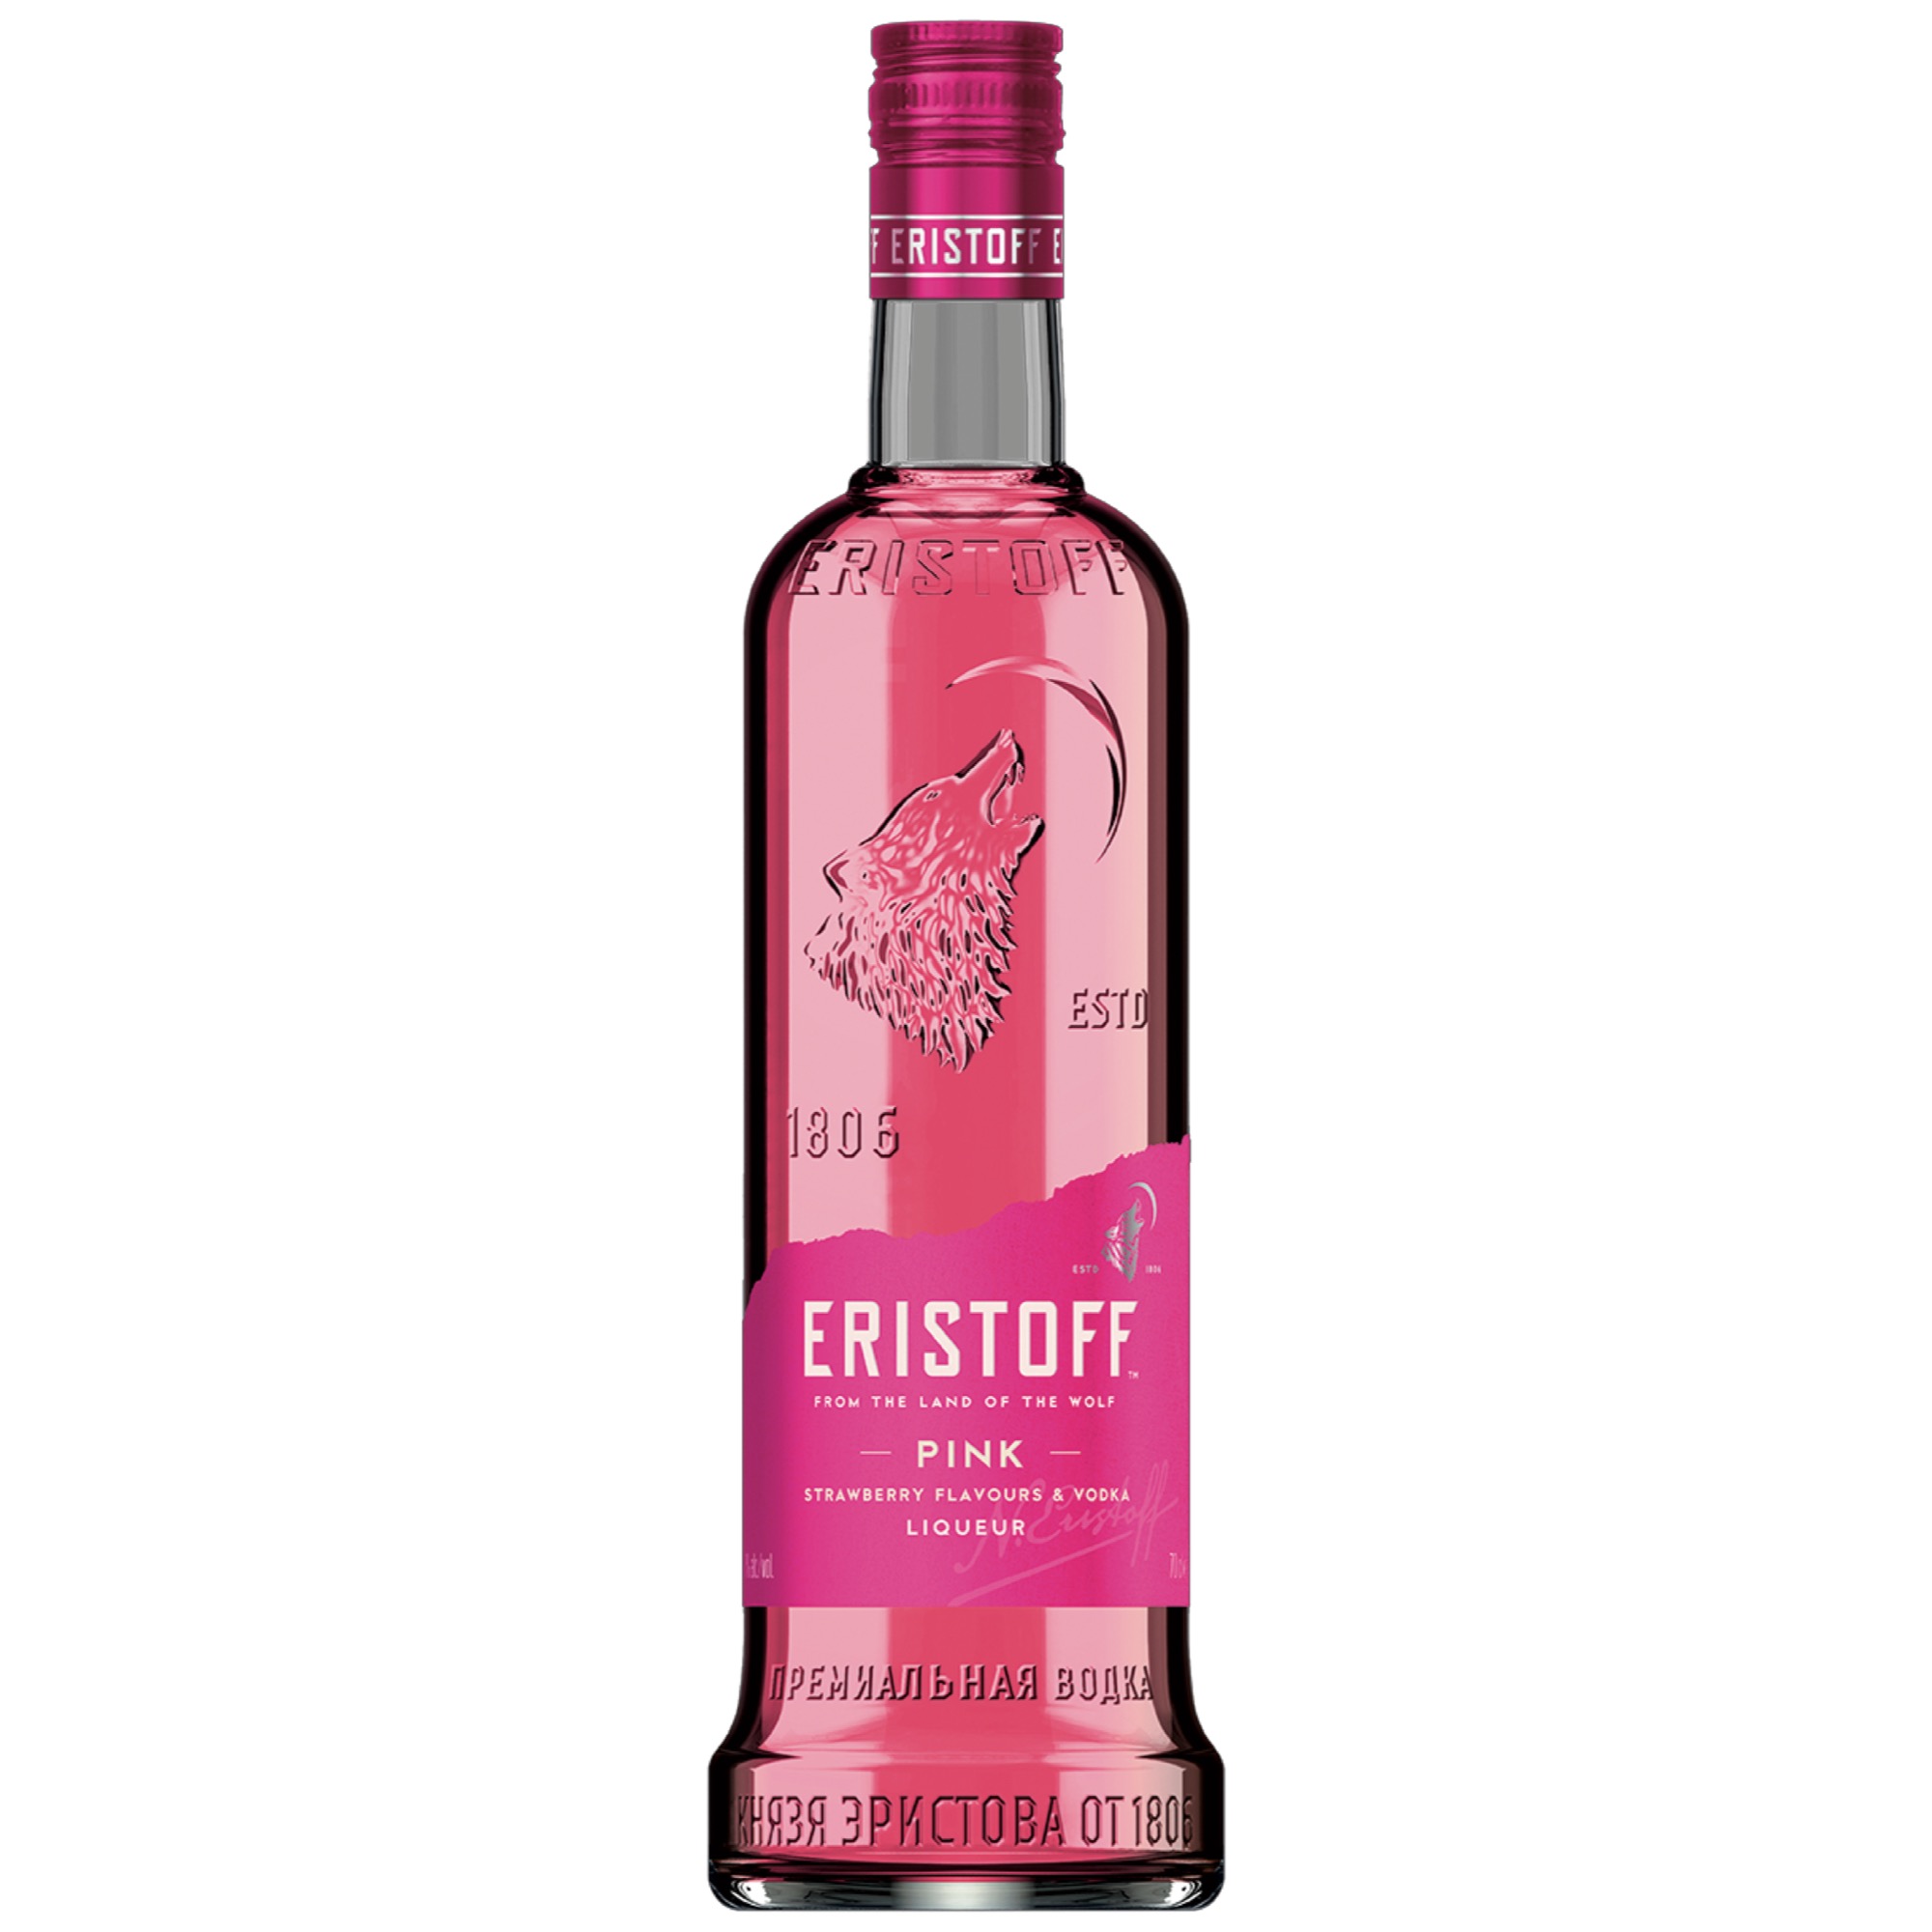 Eristoff Vodka 0,7l, Pink